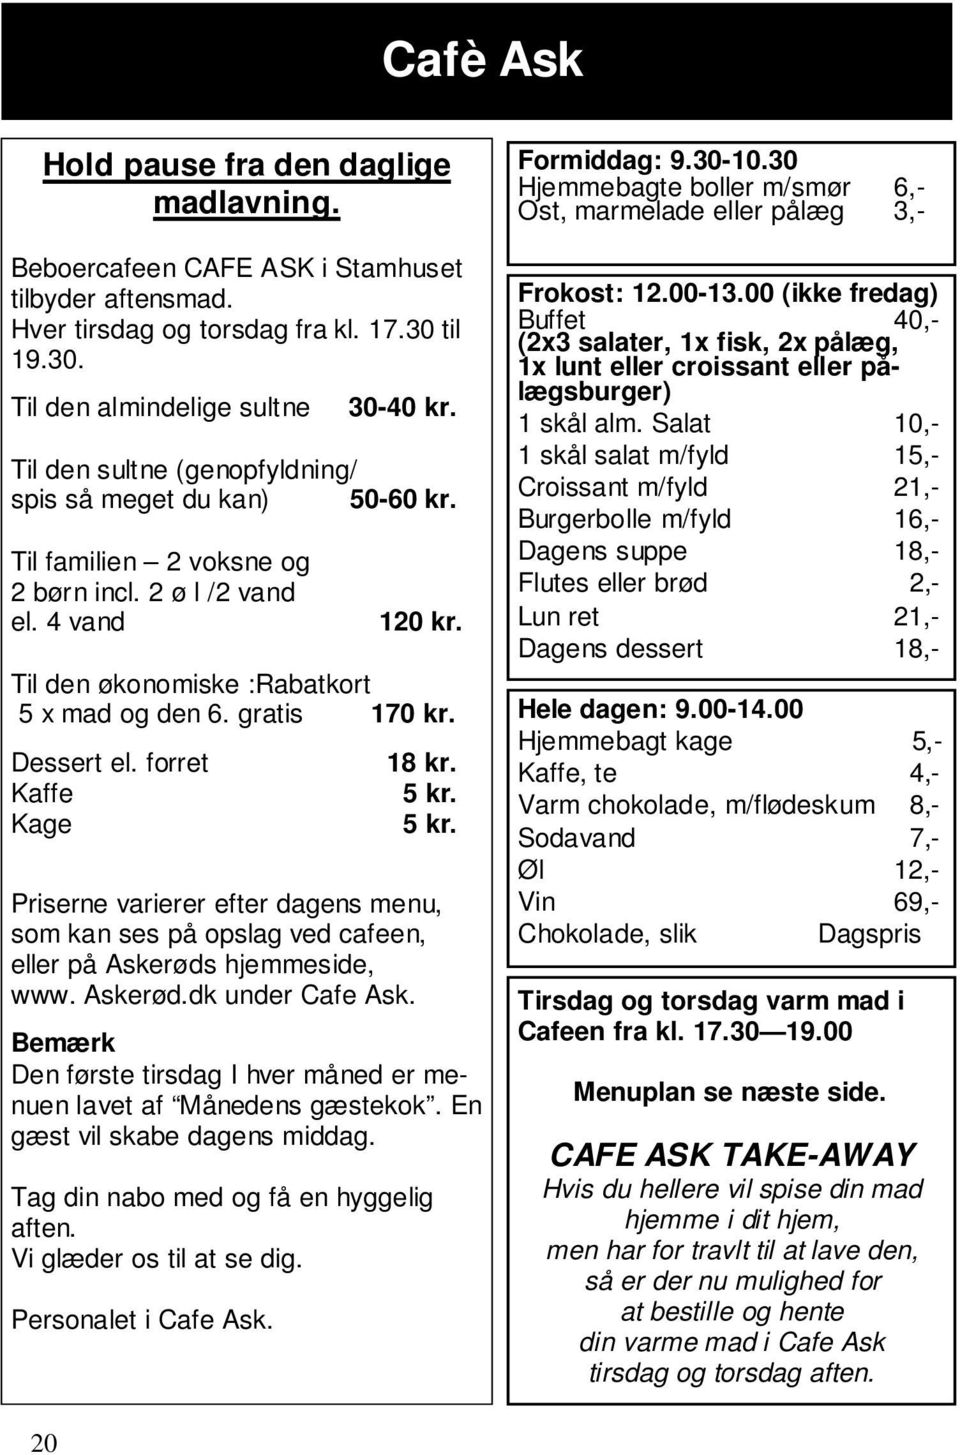 Dessert el. forret Kaffe Kage 18 kr. 5 kr. 5 kr. Priserne varierer efter dagens menu, som kan ses på opslag ved cafeen, eller på Askerøds hjemmeside, www. Askerød.dk under Cafe Ask.